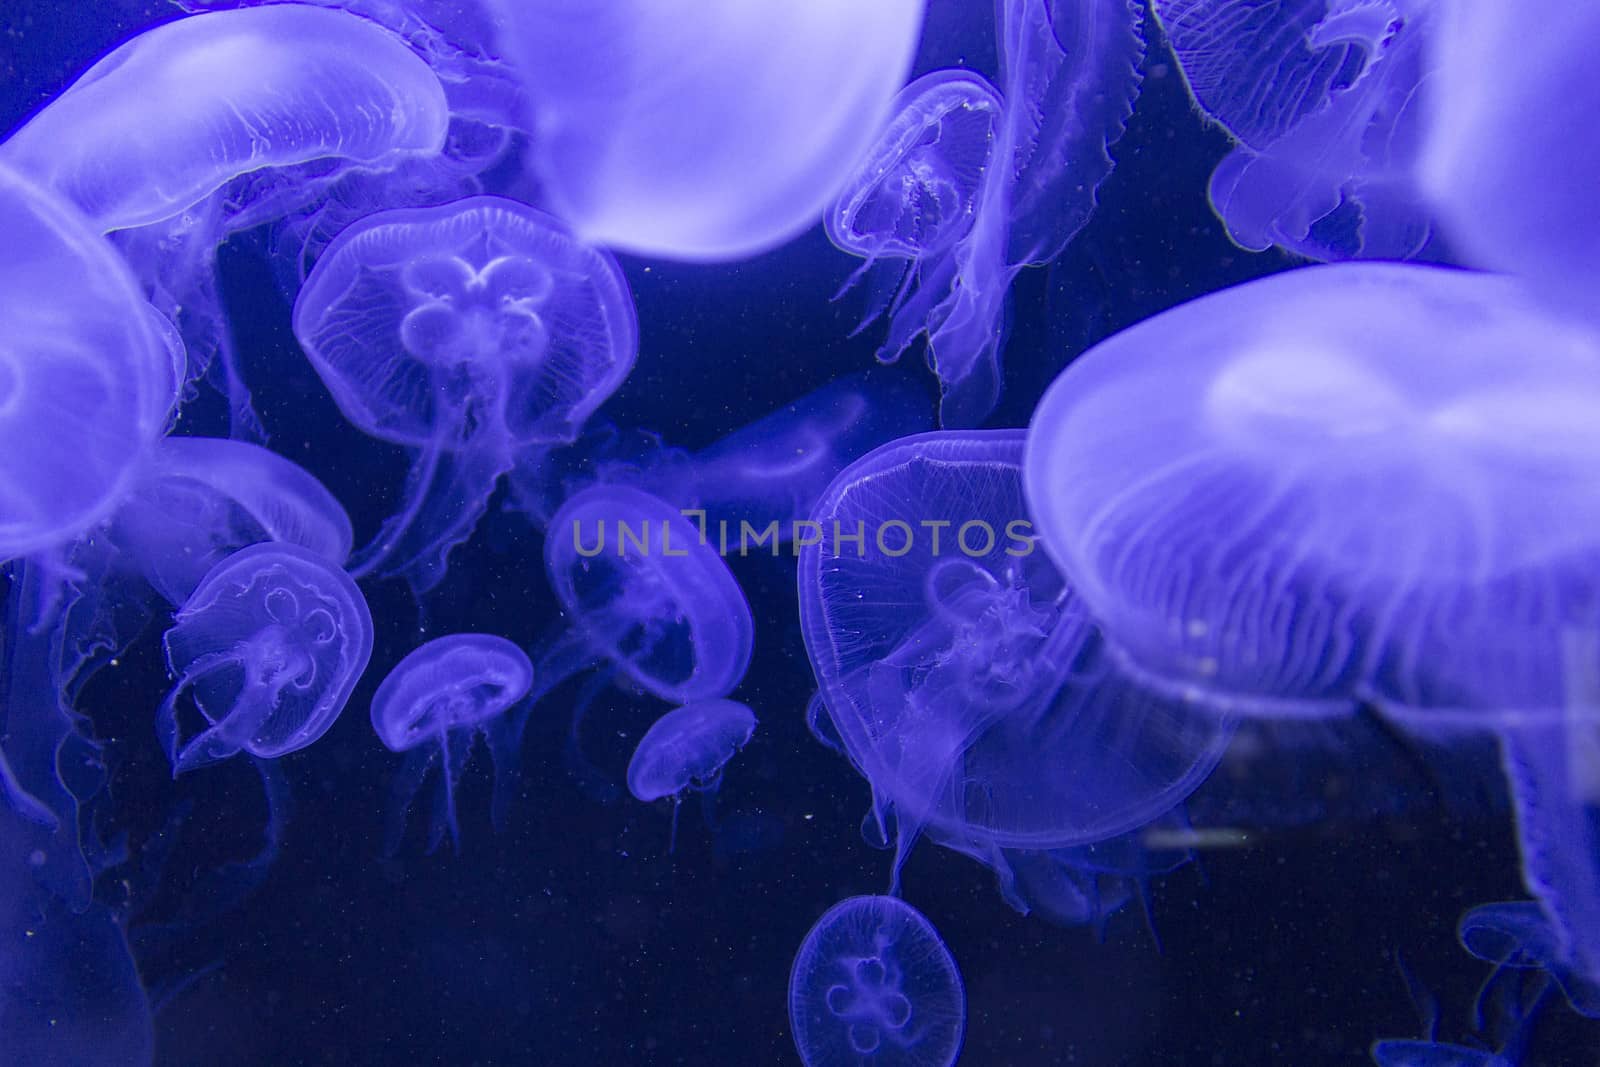 Blue jellyfish swimming in dark aquarium.